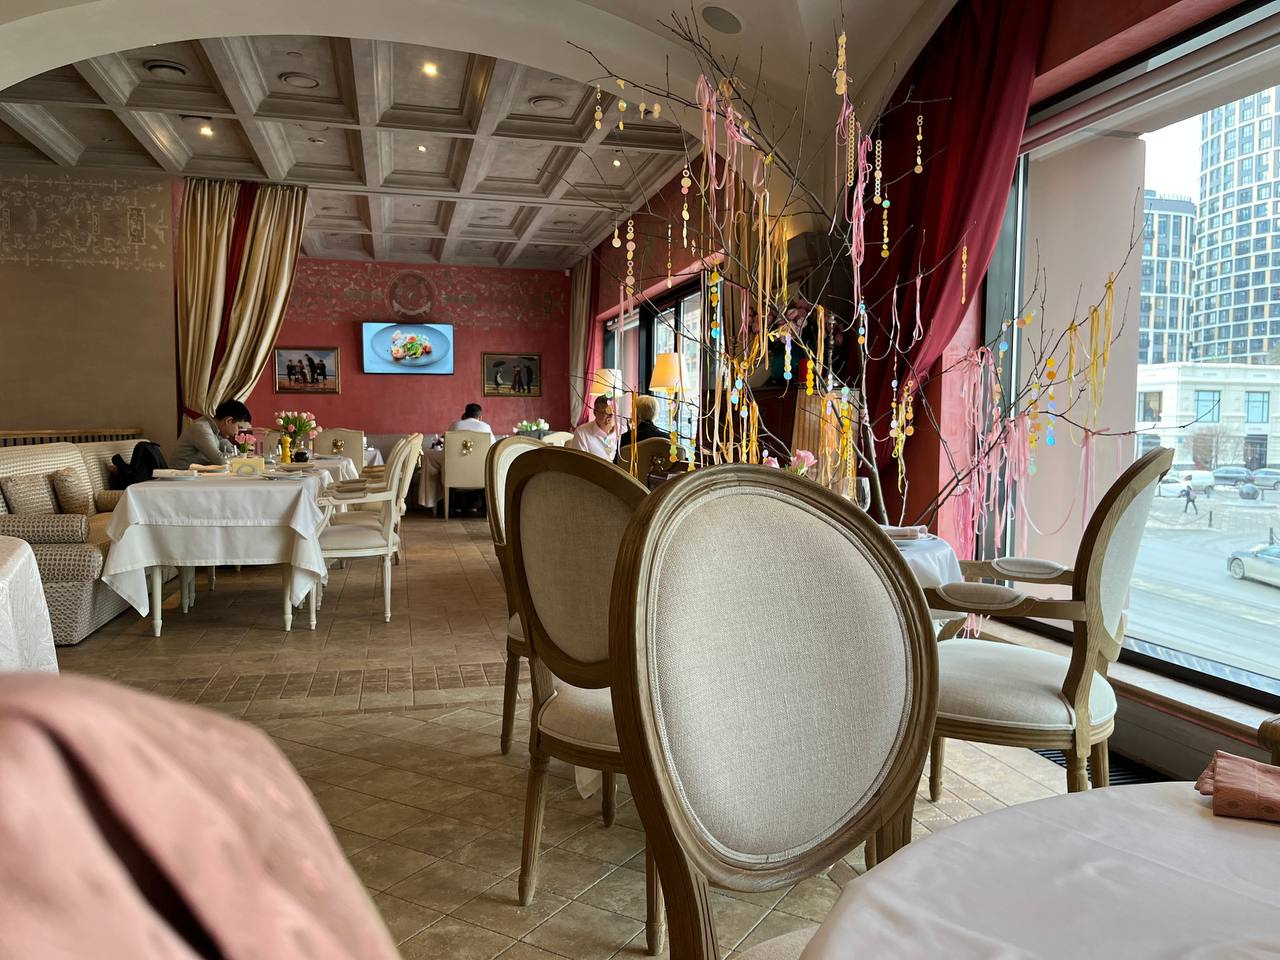 Элитный ресторан в центре Екатеринбурга нашел мстителей, заливших зал кровавой краской